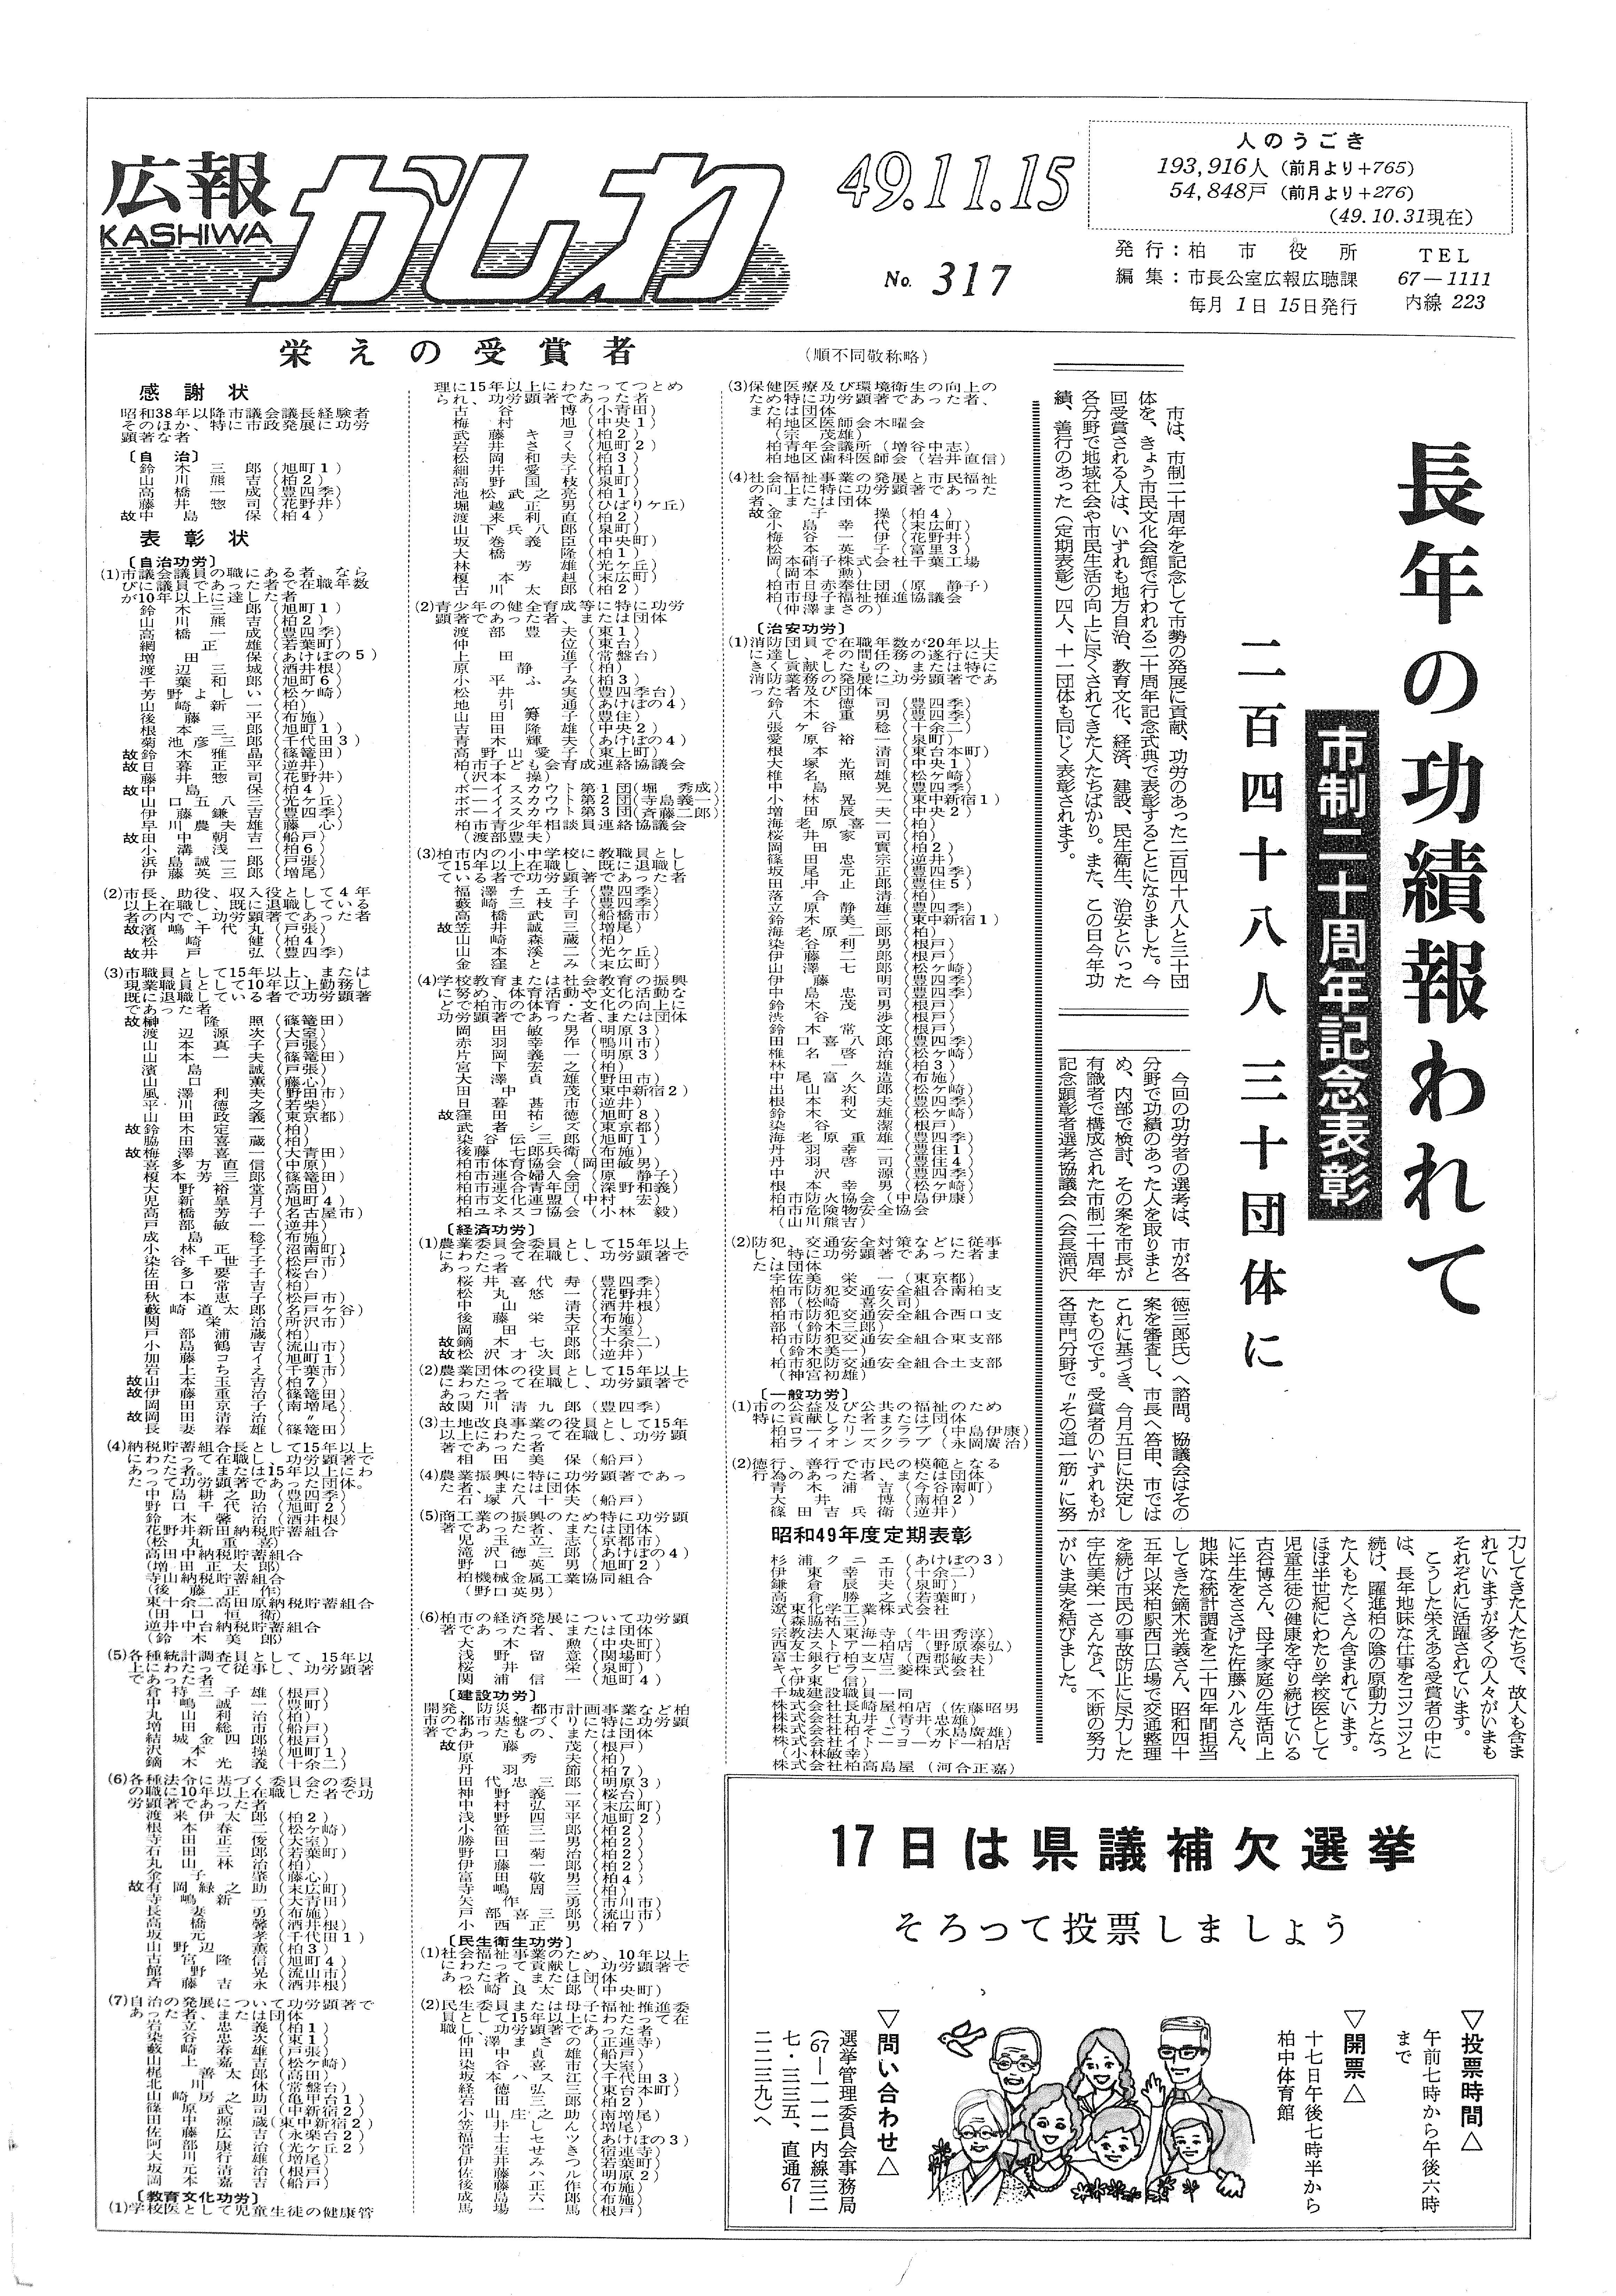 広報かしわ　昭和49年11月15日発行　317号